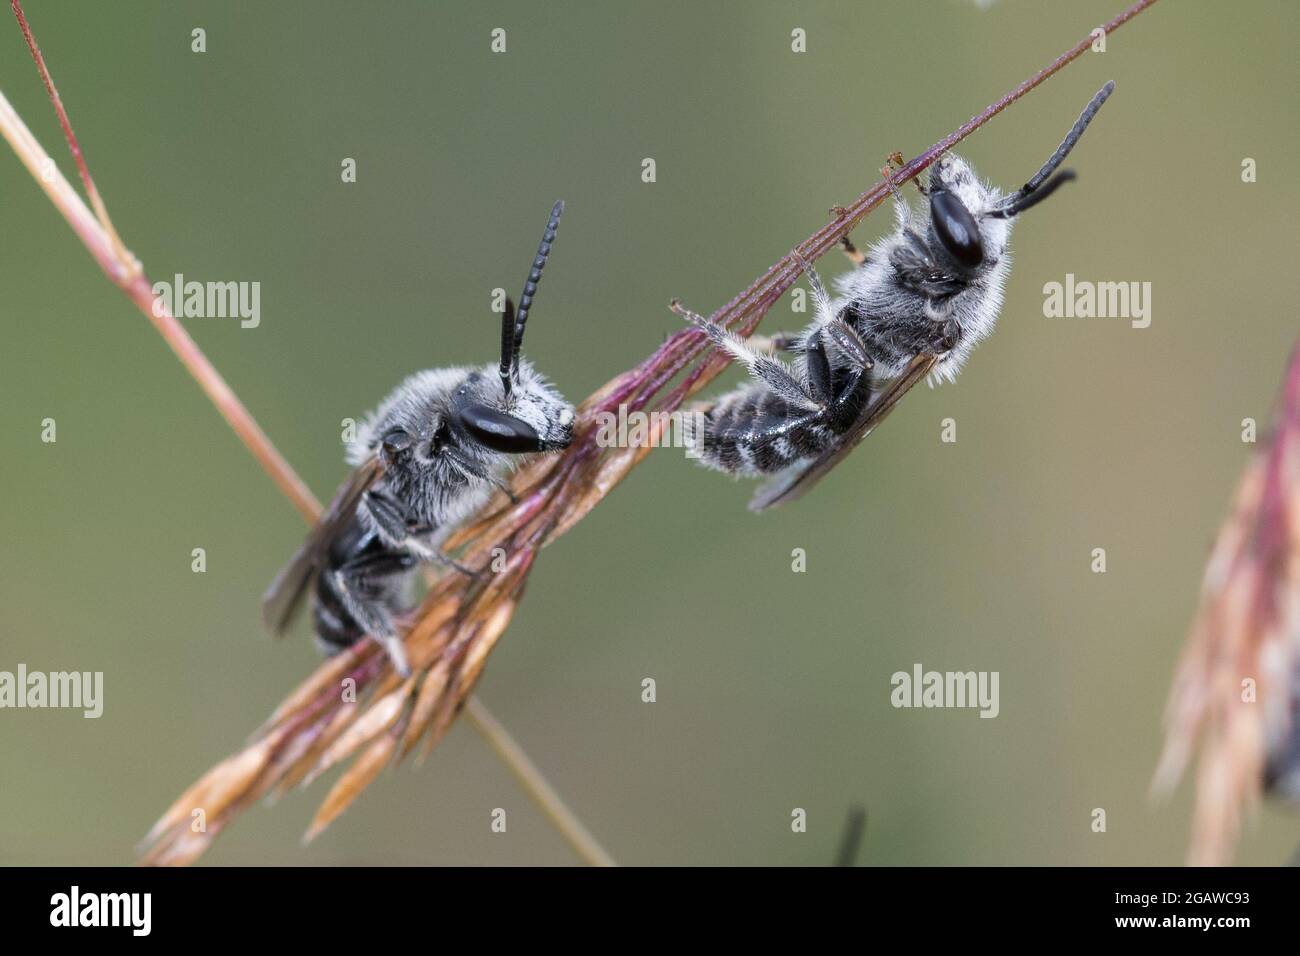 Zwei Wildbienen machen Pause auf einem Grashalm in der Blumenwiese Foto Stock